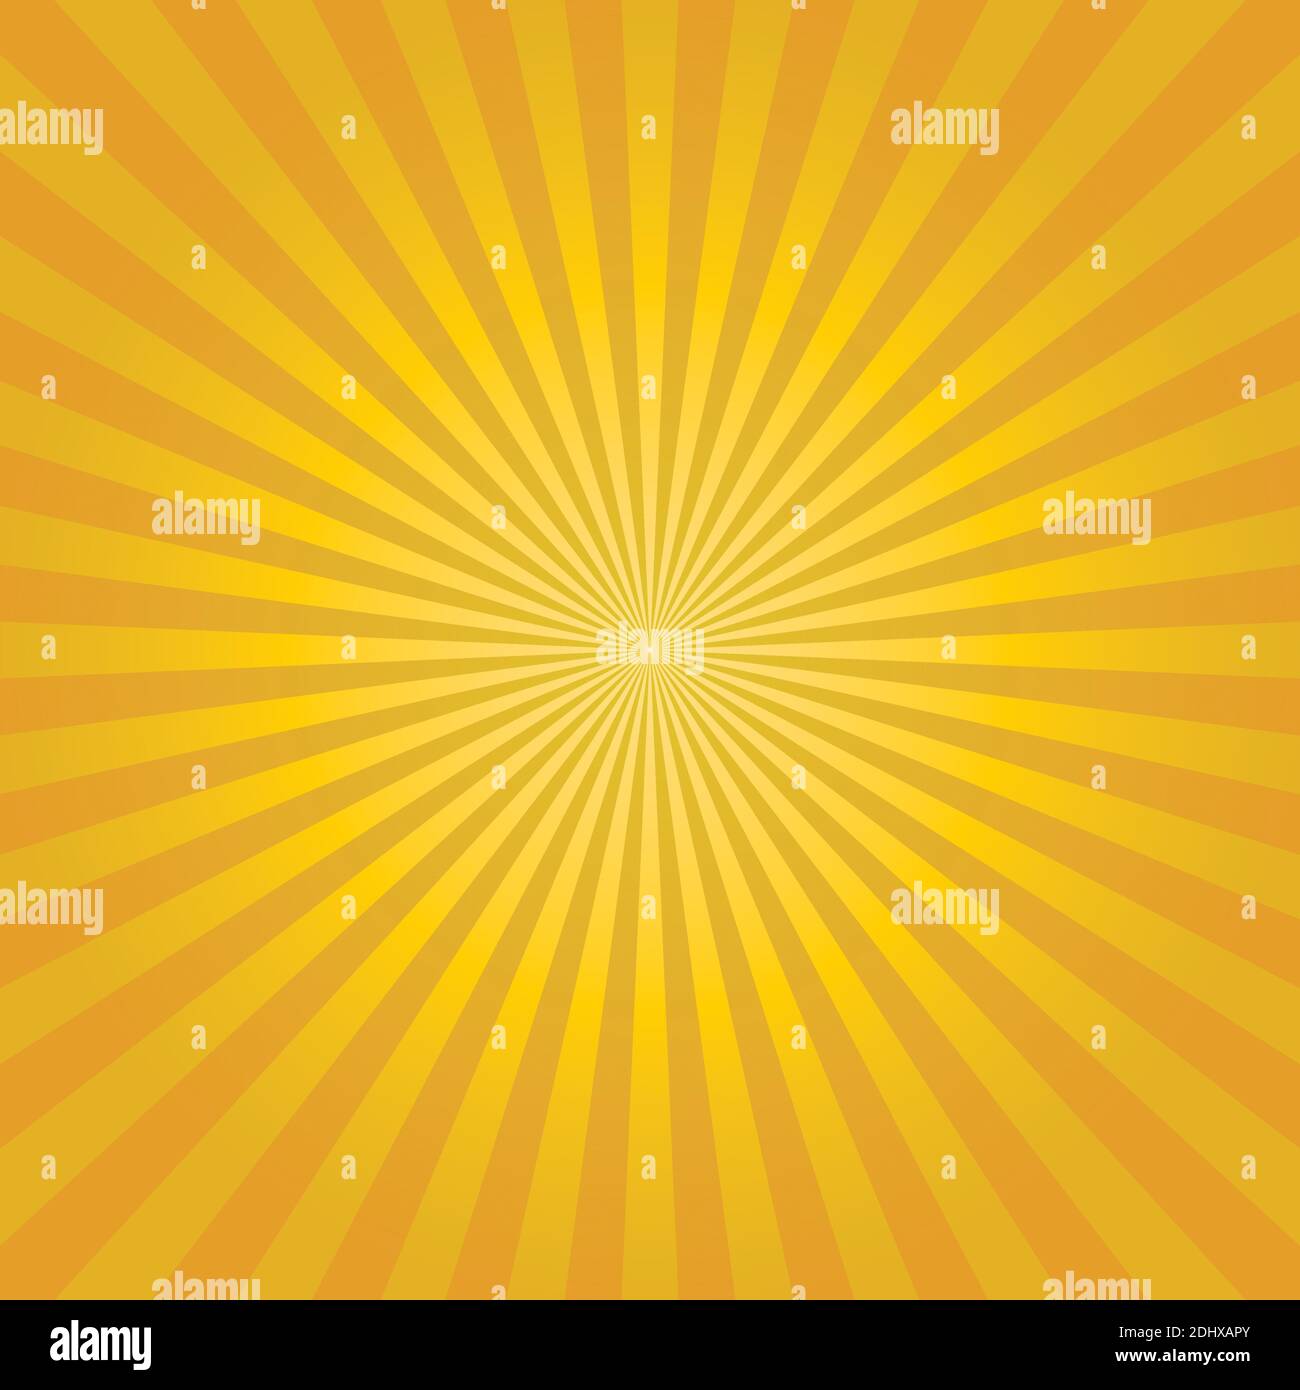 Astratto giallo Sunburst backgound. Raggi vettoriali in disposizione radiale. Illustrazione Vettoriale